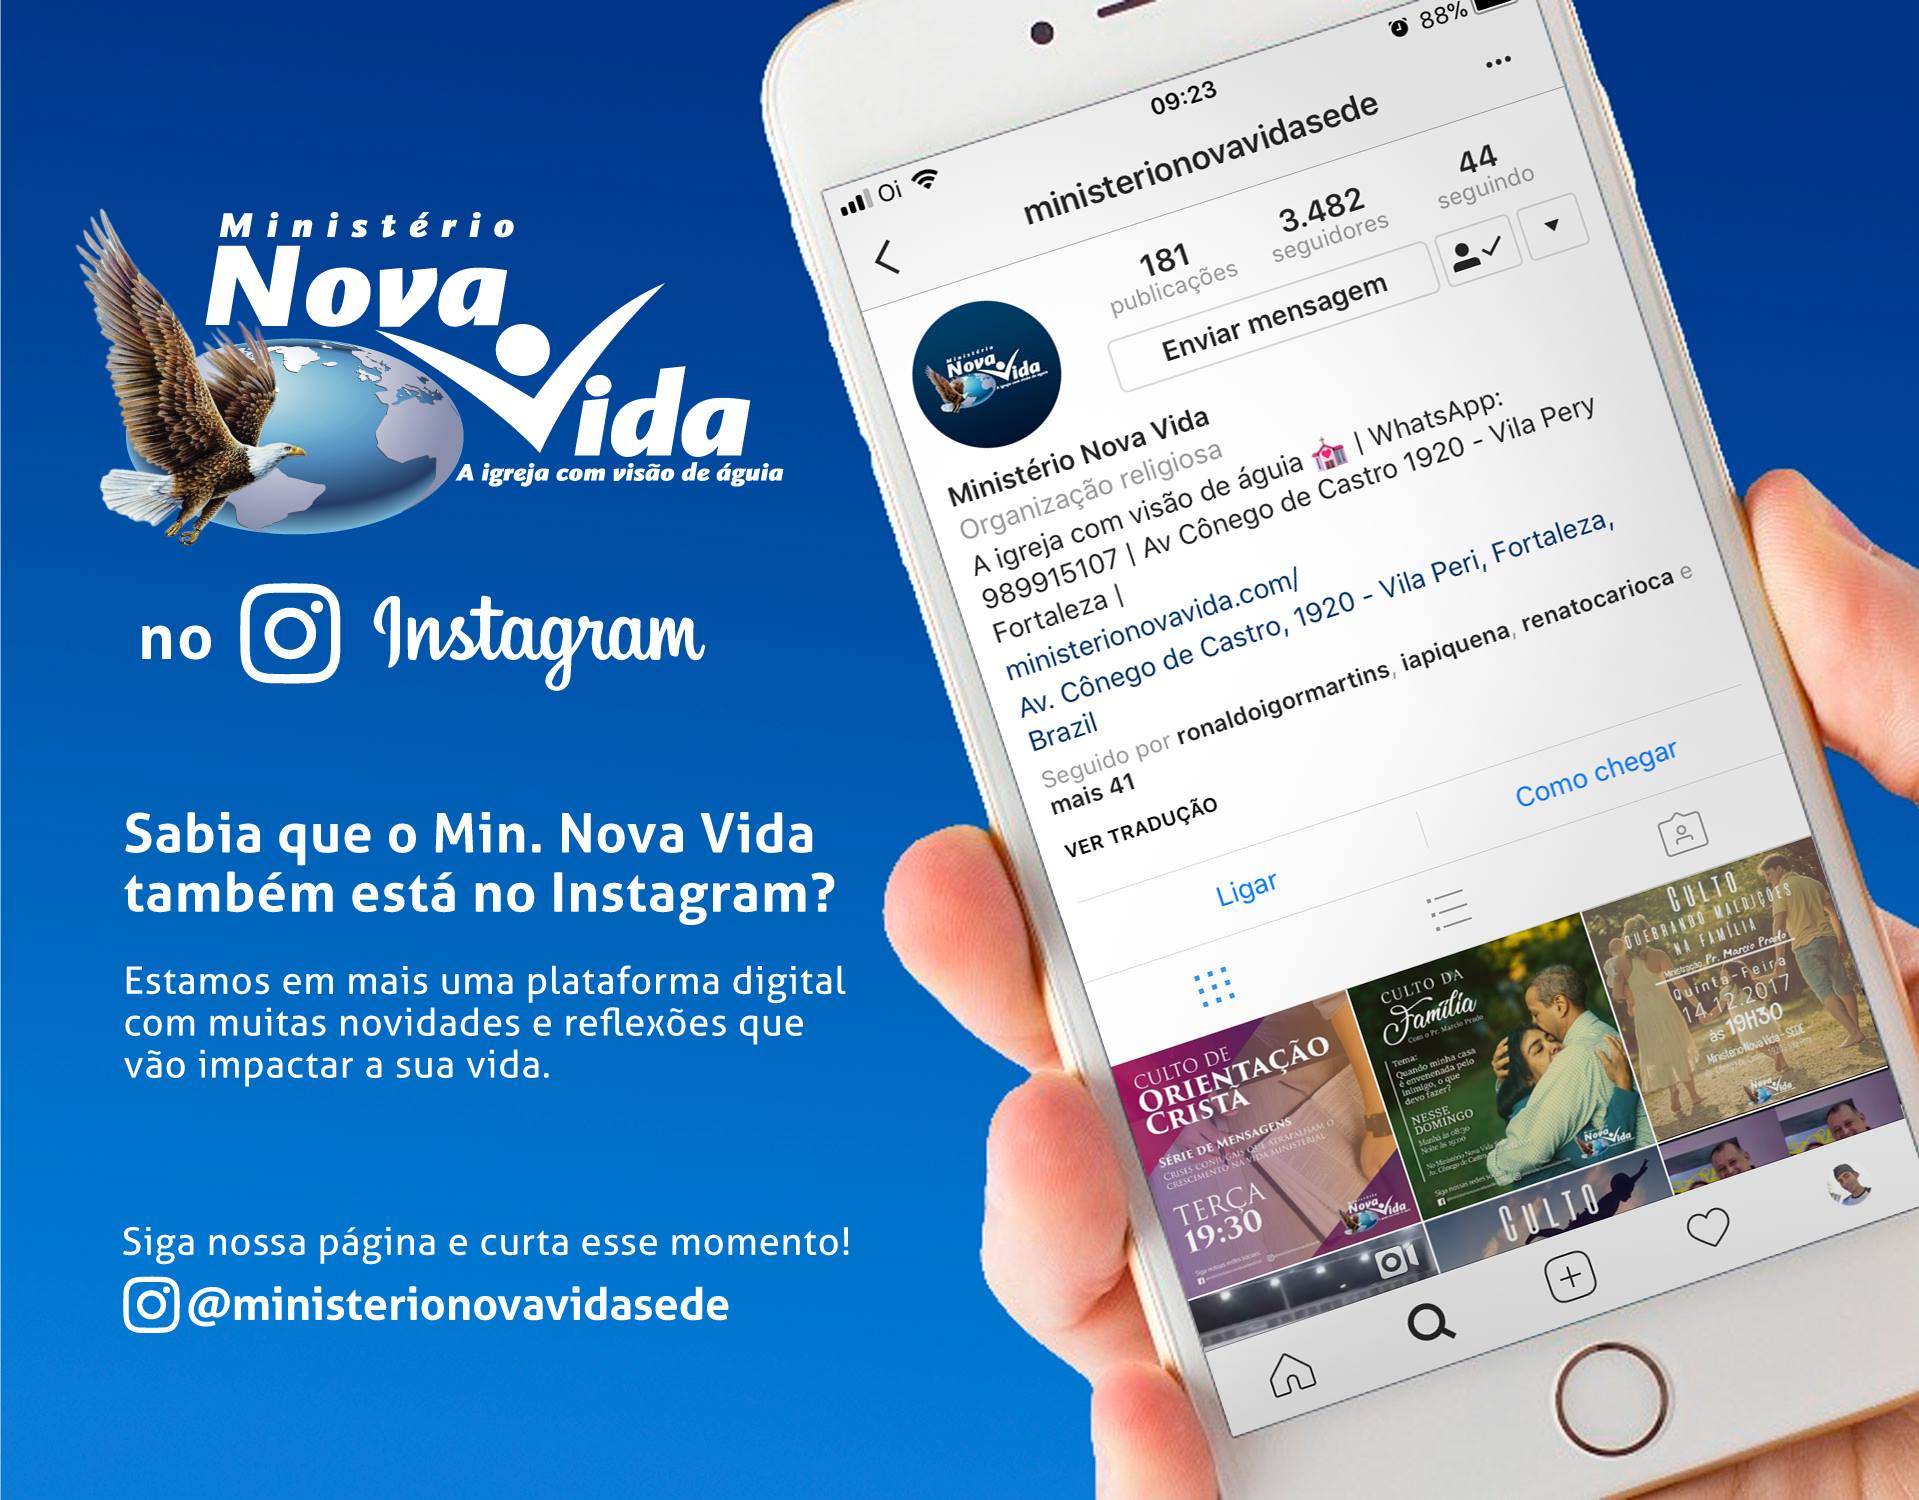 Siga o Ministério Nova Vida no Instagram